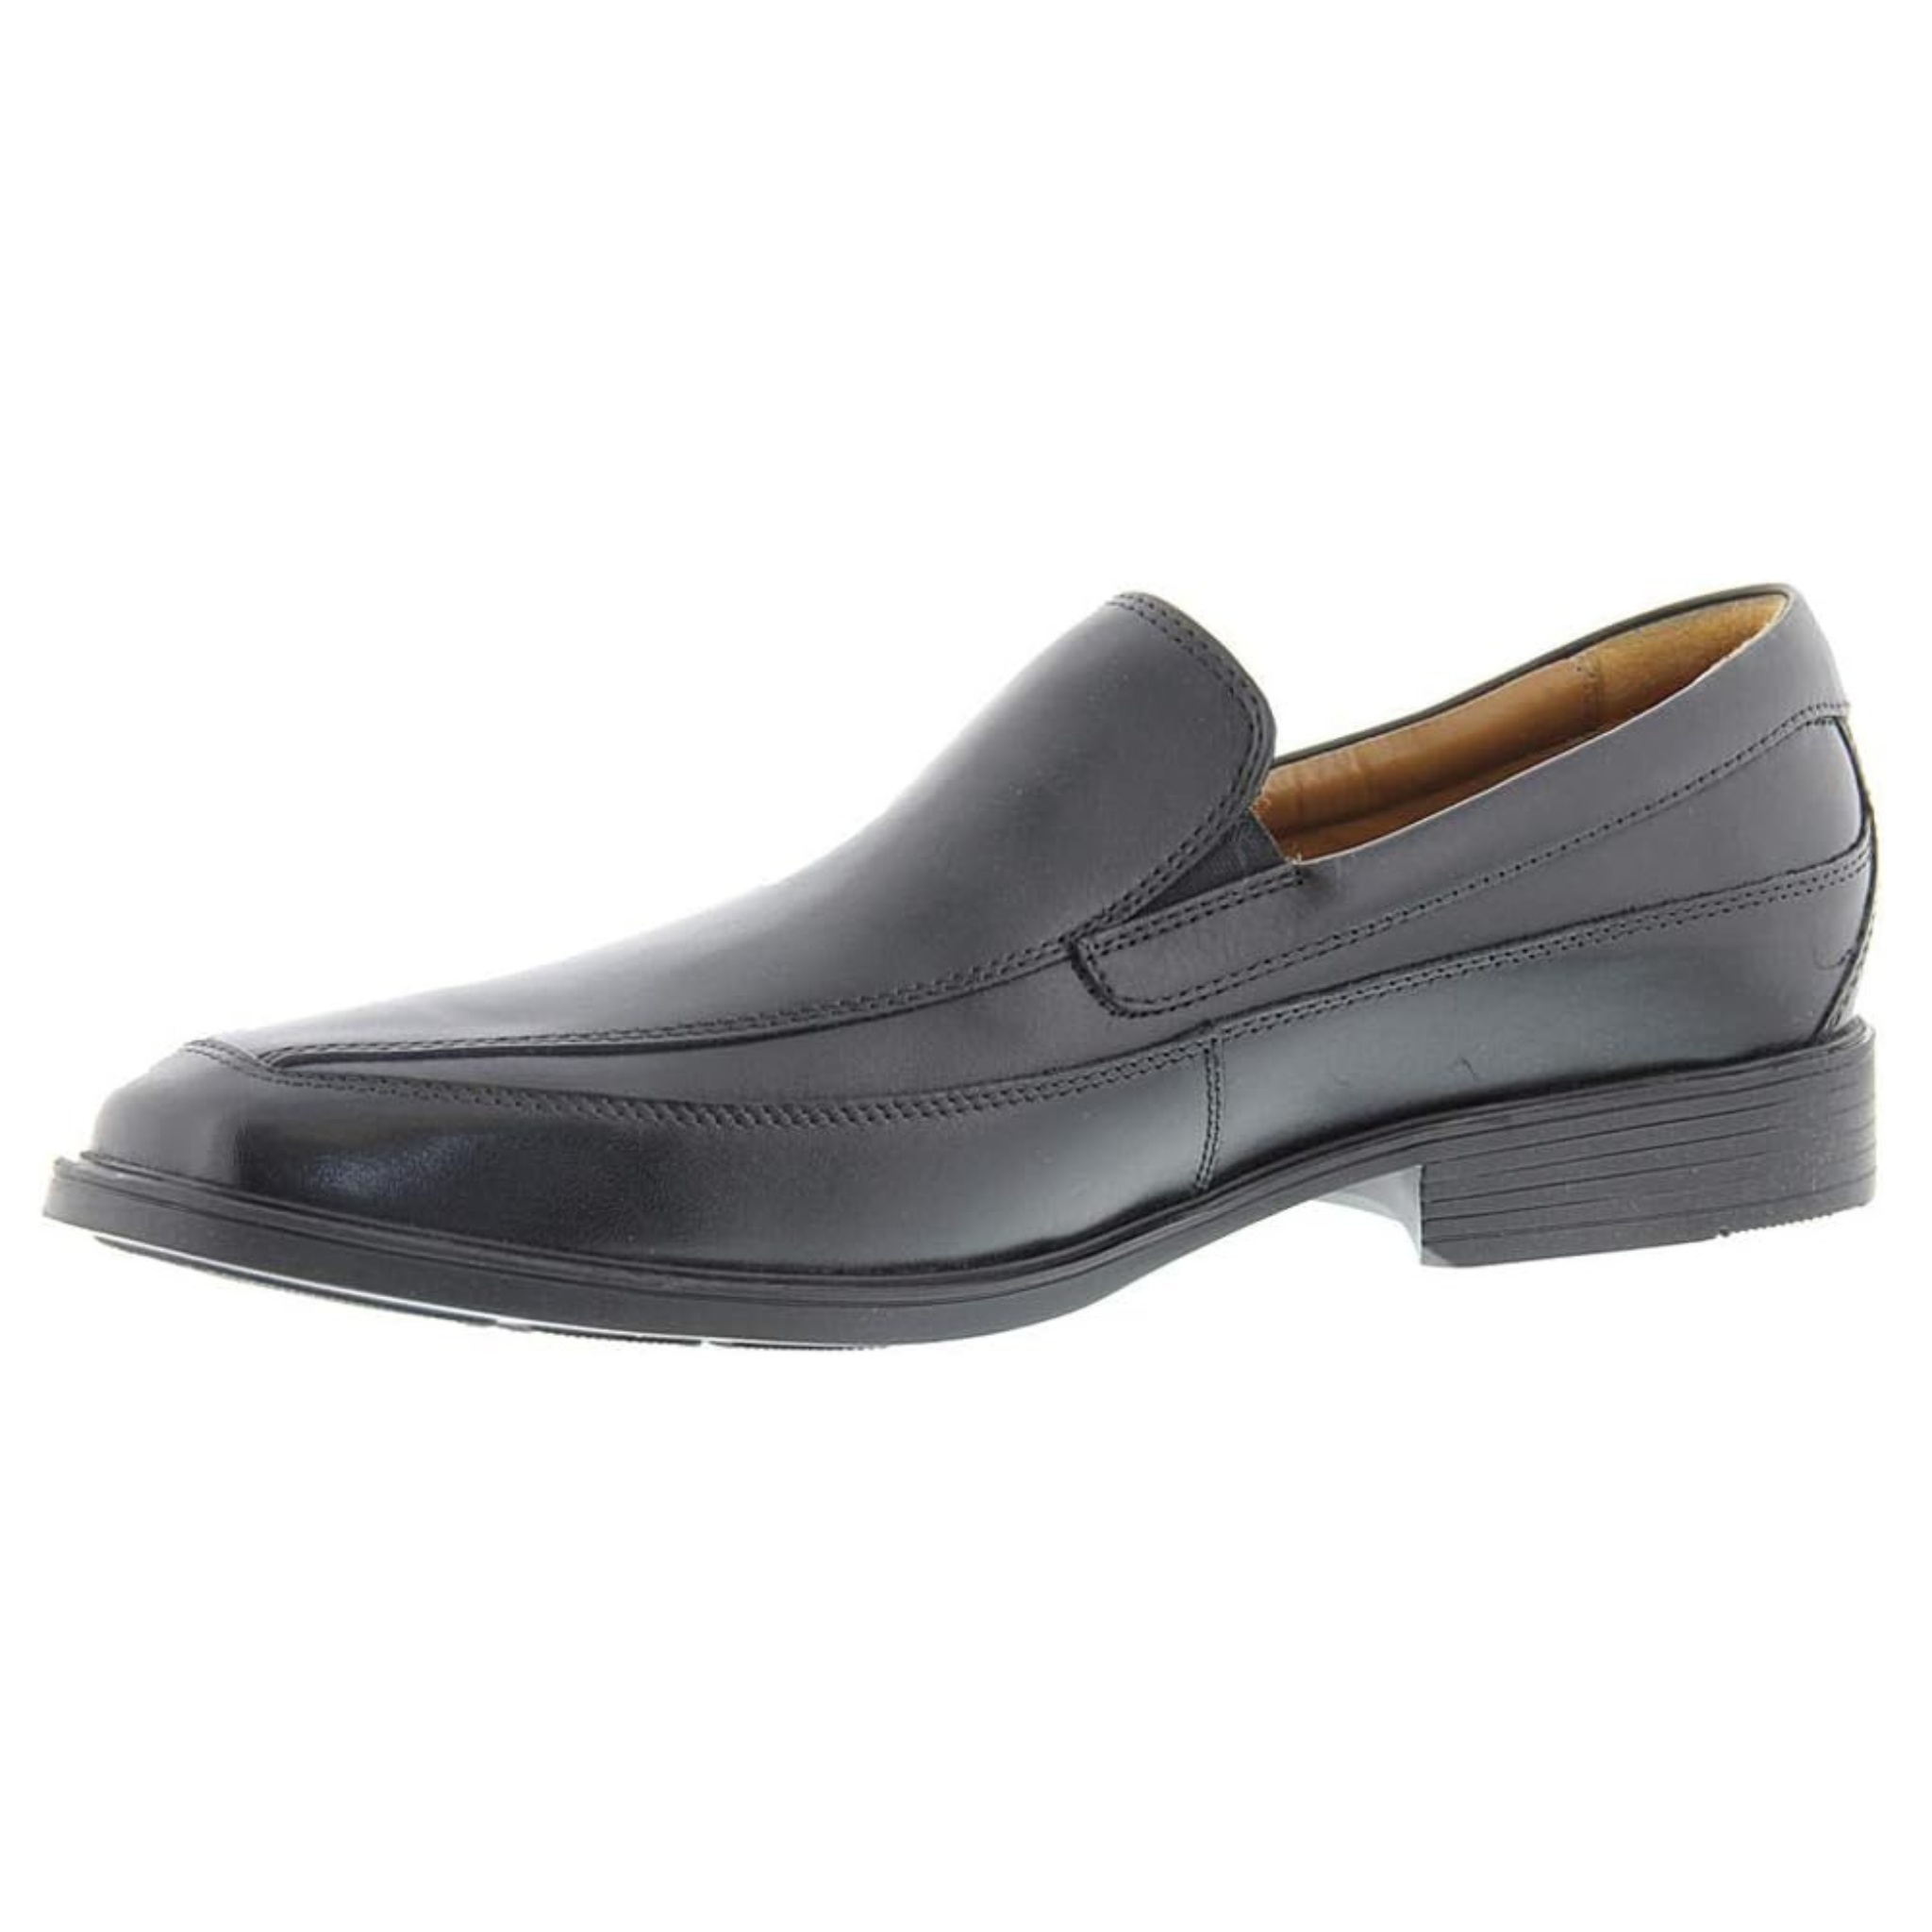 Clarks Men's Tilden Free Loafer Shoes